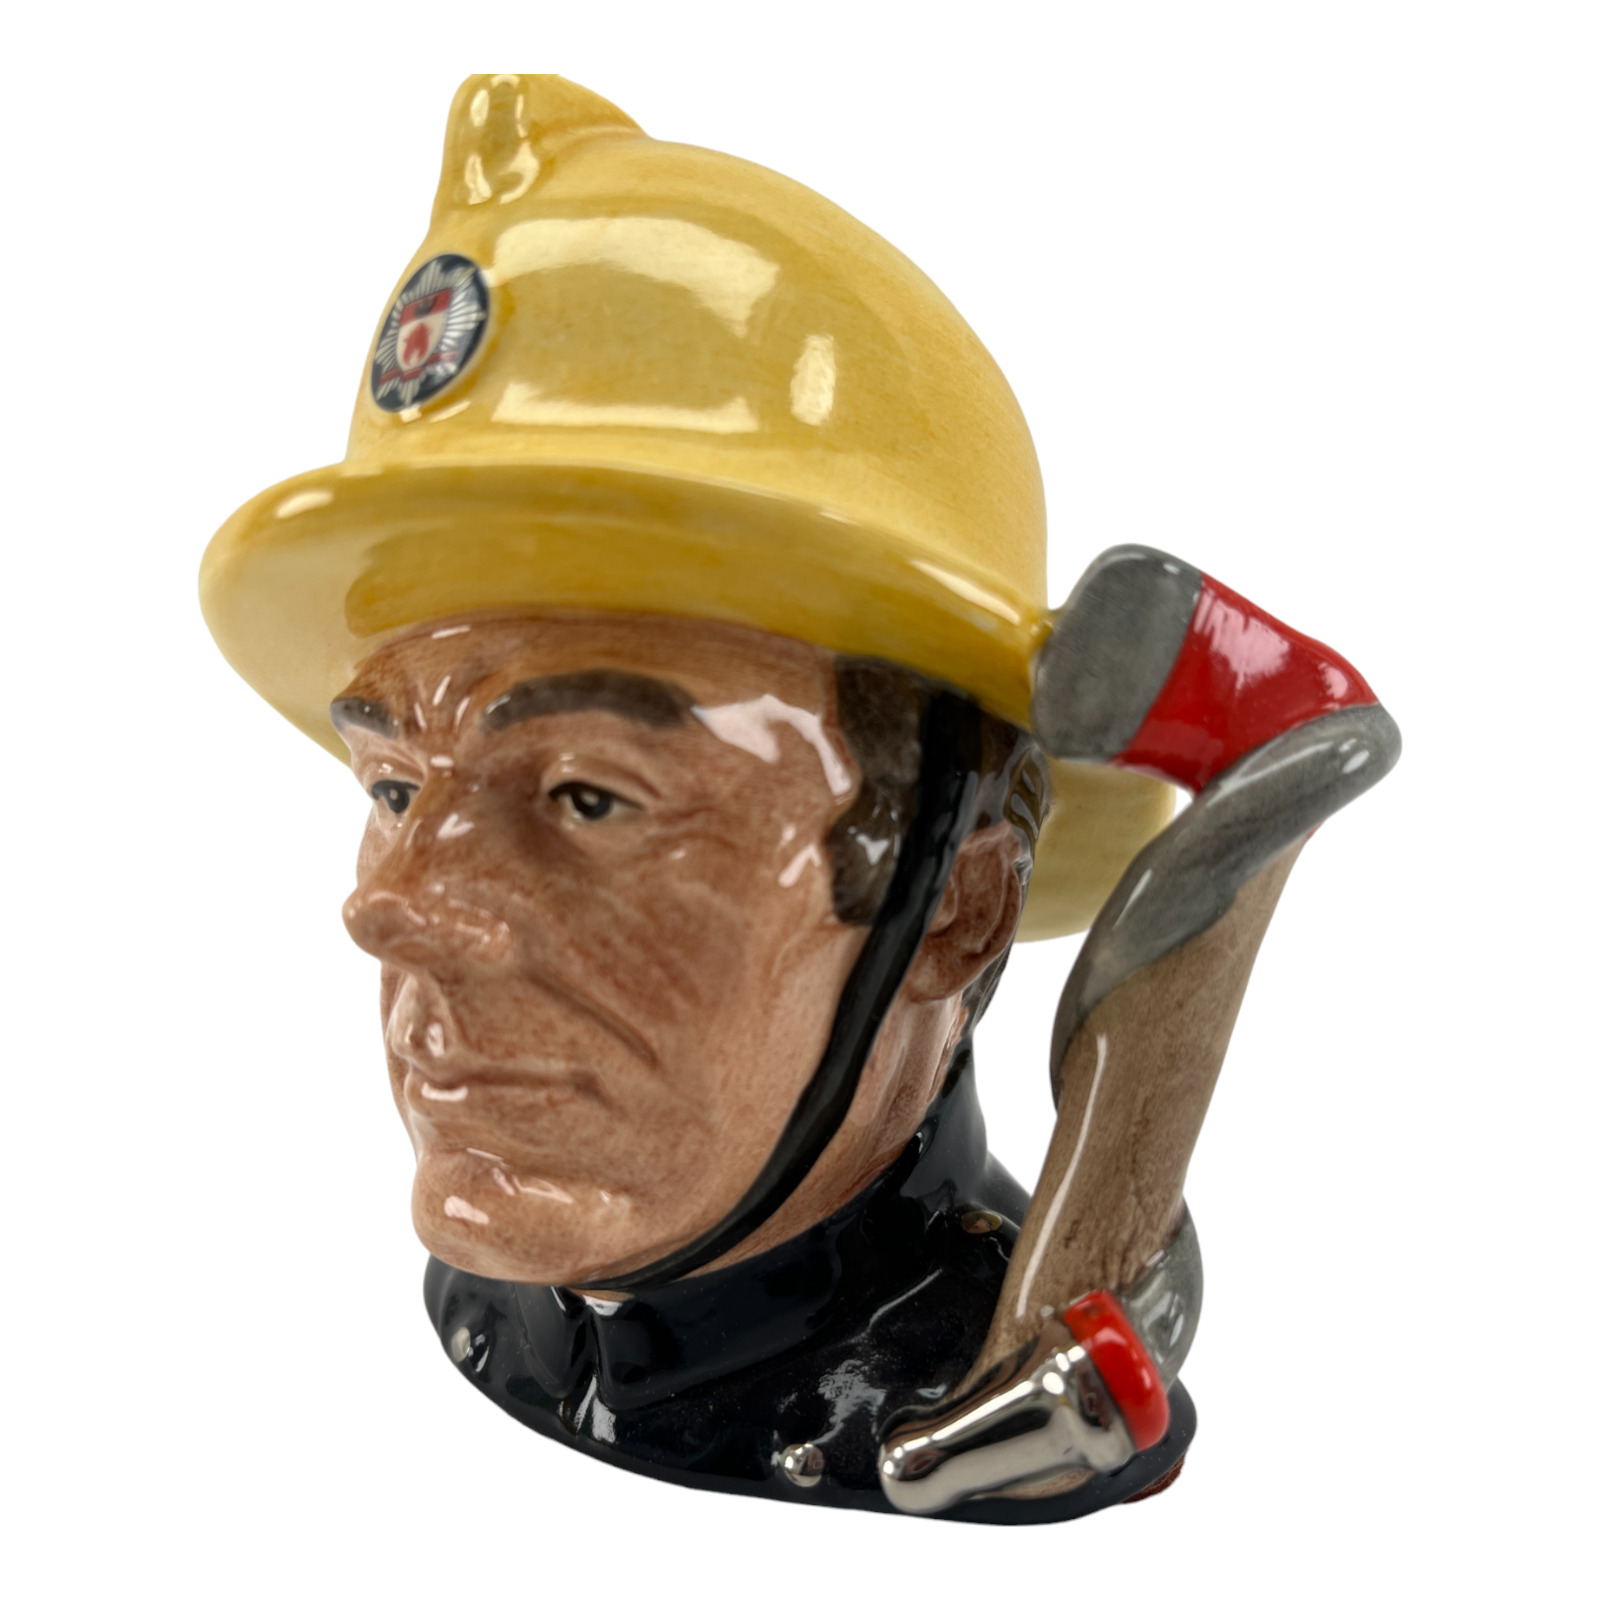 Fireman D6839 – Small – Royal Doulton Character Jug Limited Edition #2004/5000